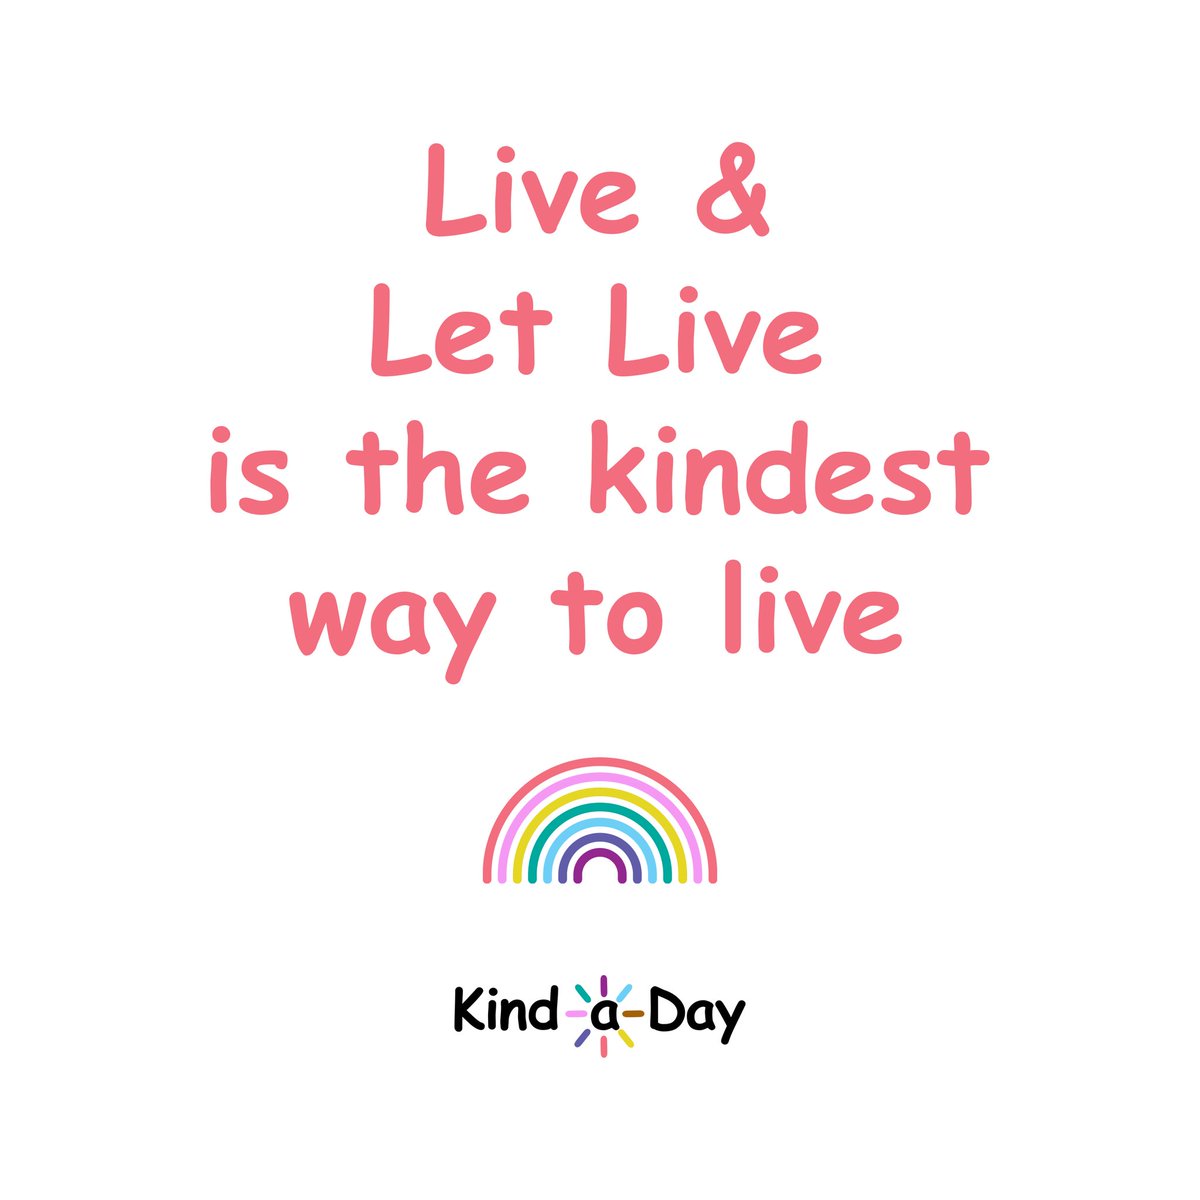 Live & Let Live
is the kindest way to live 🌈
 
#LiveAndLetLive #Love #kind #BeKind #kindness #KindLife #ActsOfKindness #SpreadKindness #KindnessMatters #ChooseKindness #KindnessWins #KindaDay #KindnessAlways #KindnessEveryday #Kindness365 #KindnessChallenge #RandomActsOfKindness